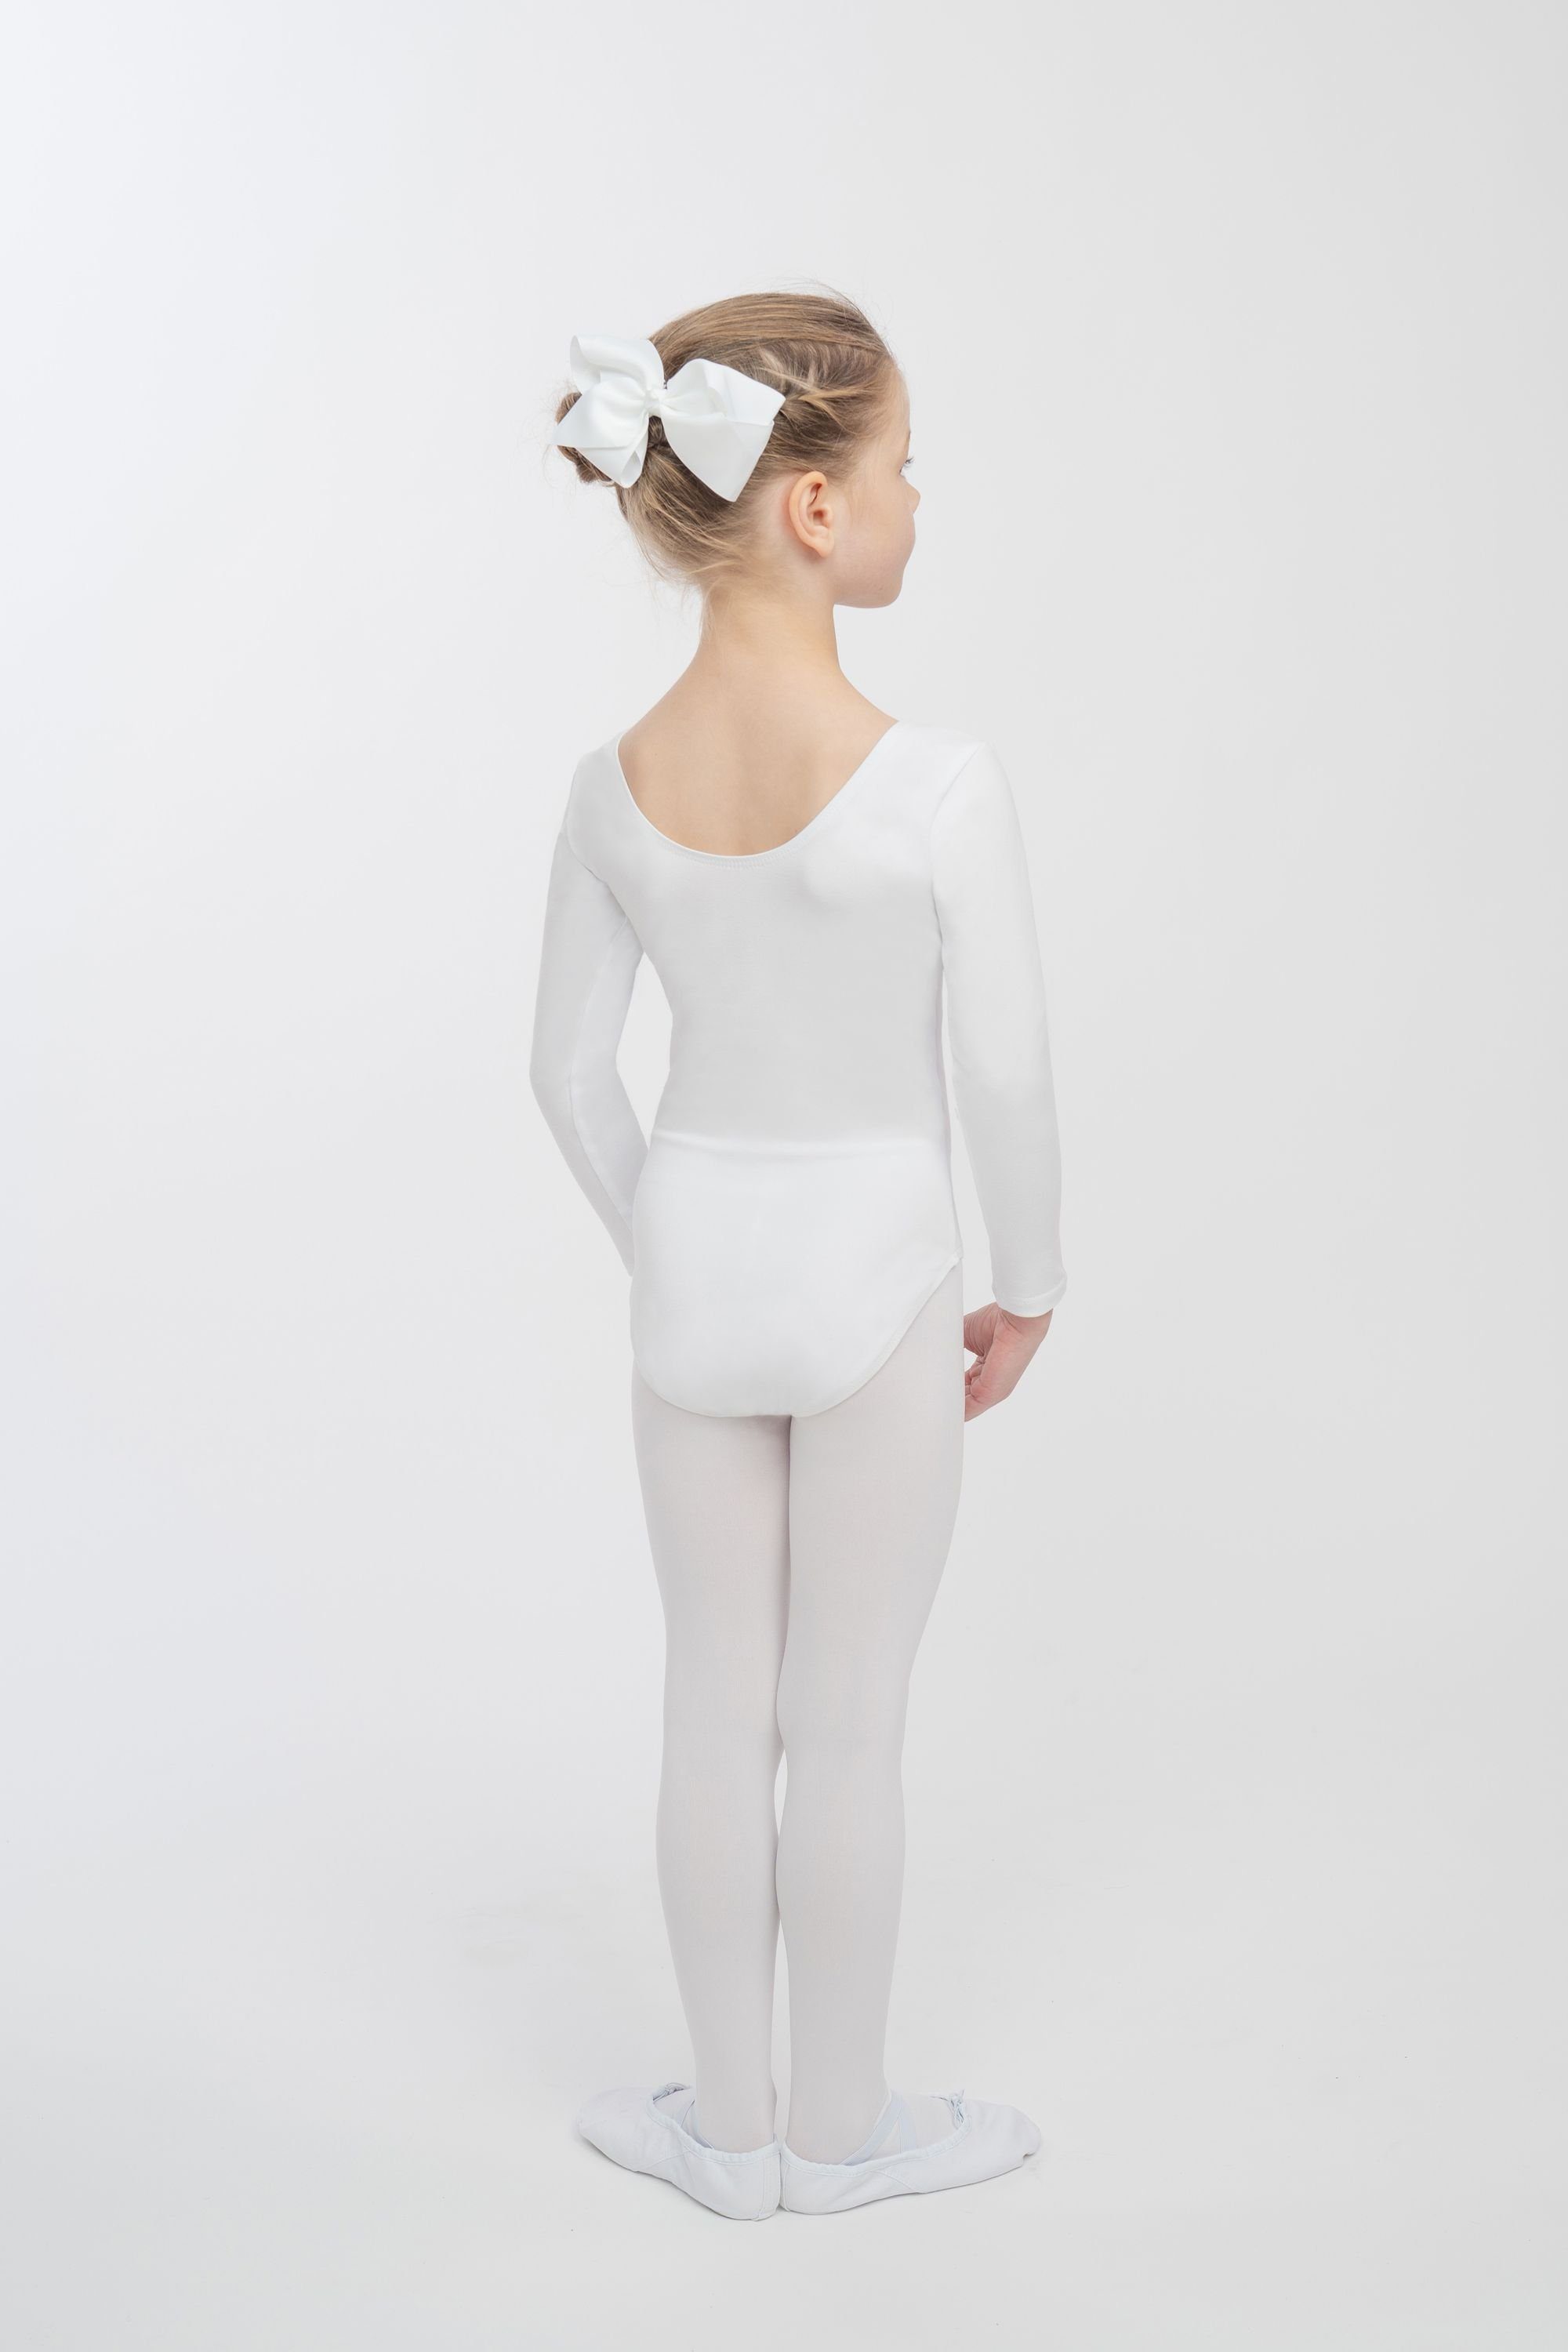 Baumwollmischgewebe weichem Body Ballett tanzmuster fürs Lilly Trikot Kinder weiß Ballettbody Langarm aus